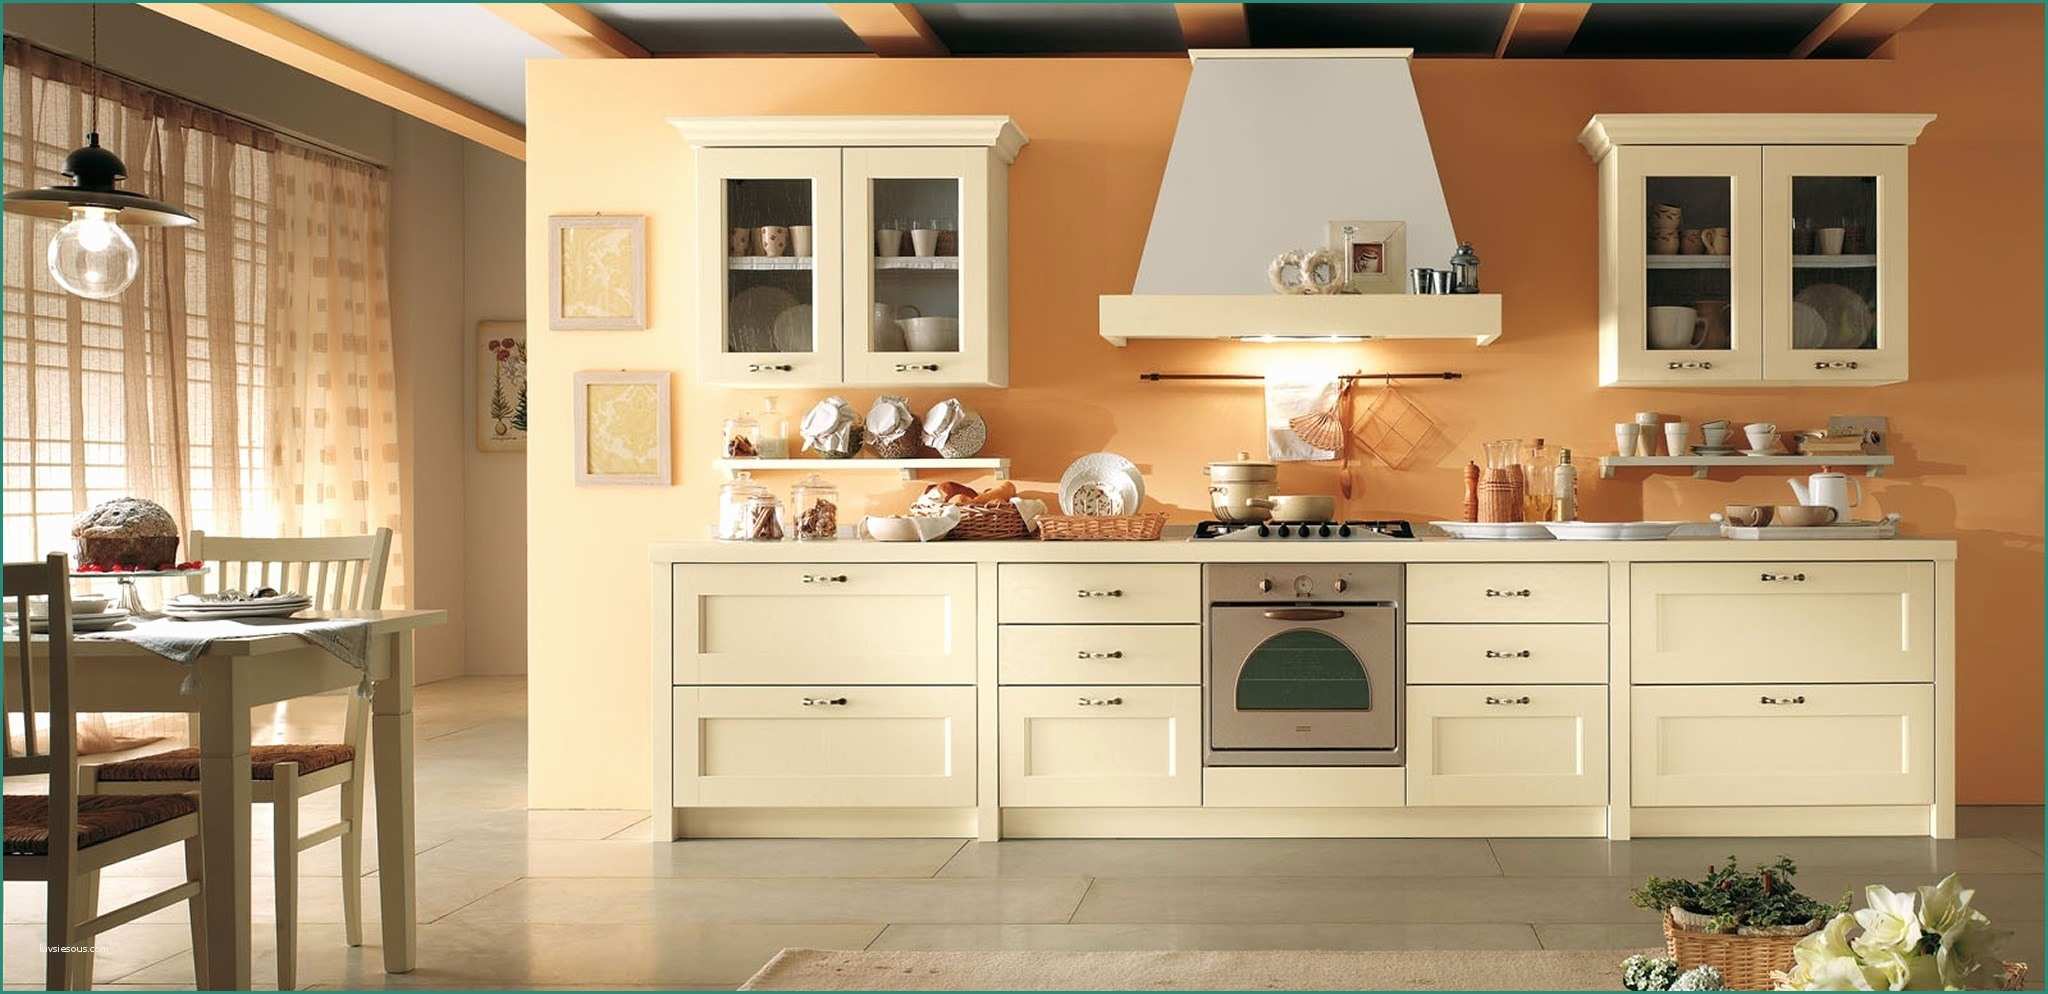 Colori Cucine Moderne E Colori X Cucina Caricamento In Corso Medium Size Per Cucina E